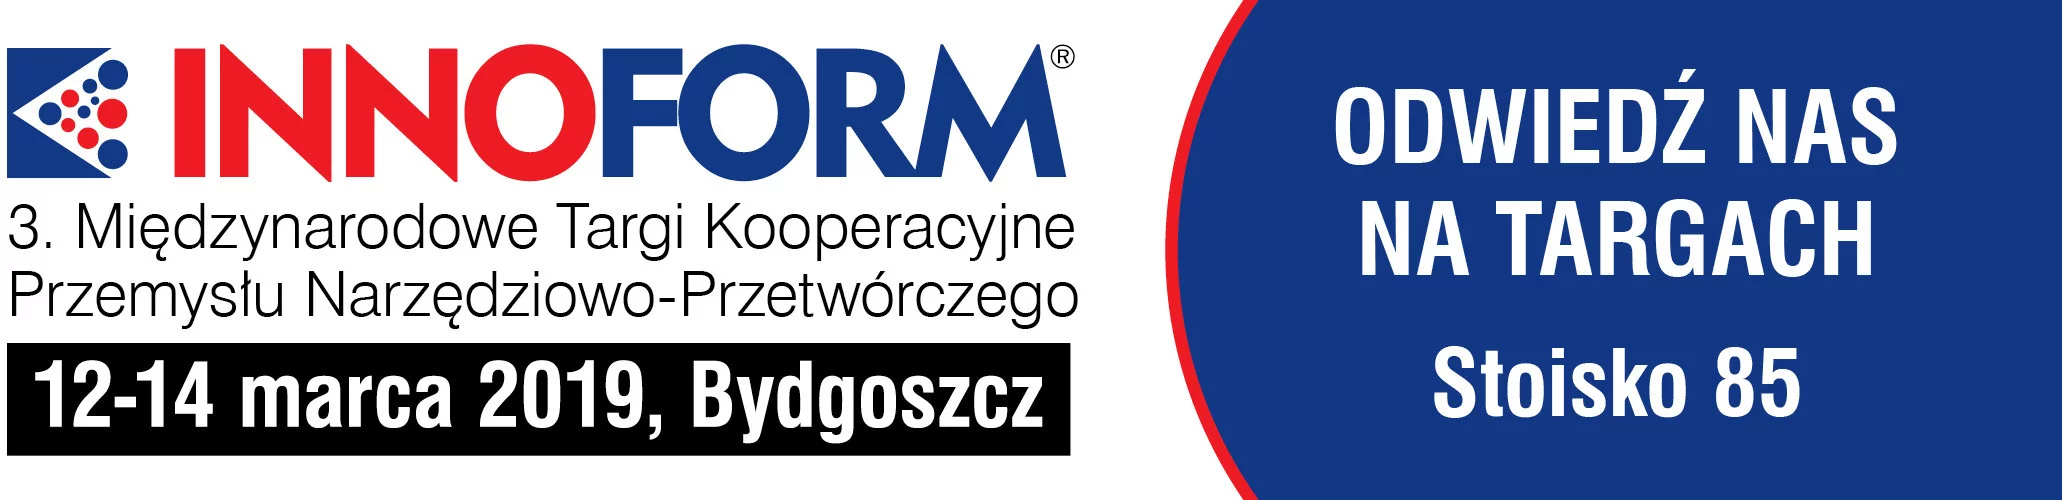 Shapers Polska na Międzynarodowych Targach Kooperacyjnych Przemysłu Narzędziowo-Przetwórczego INNOFORM